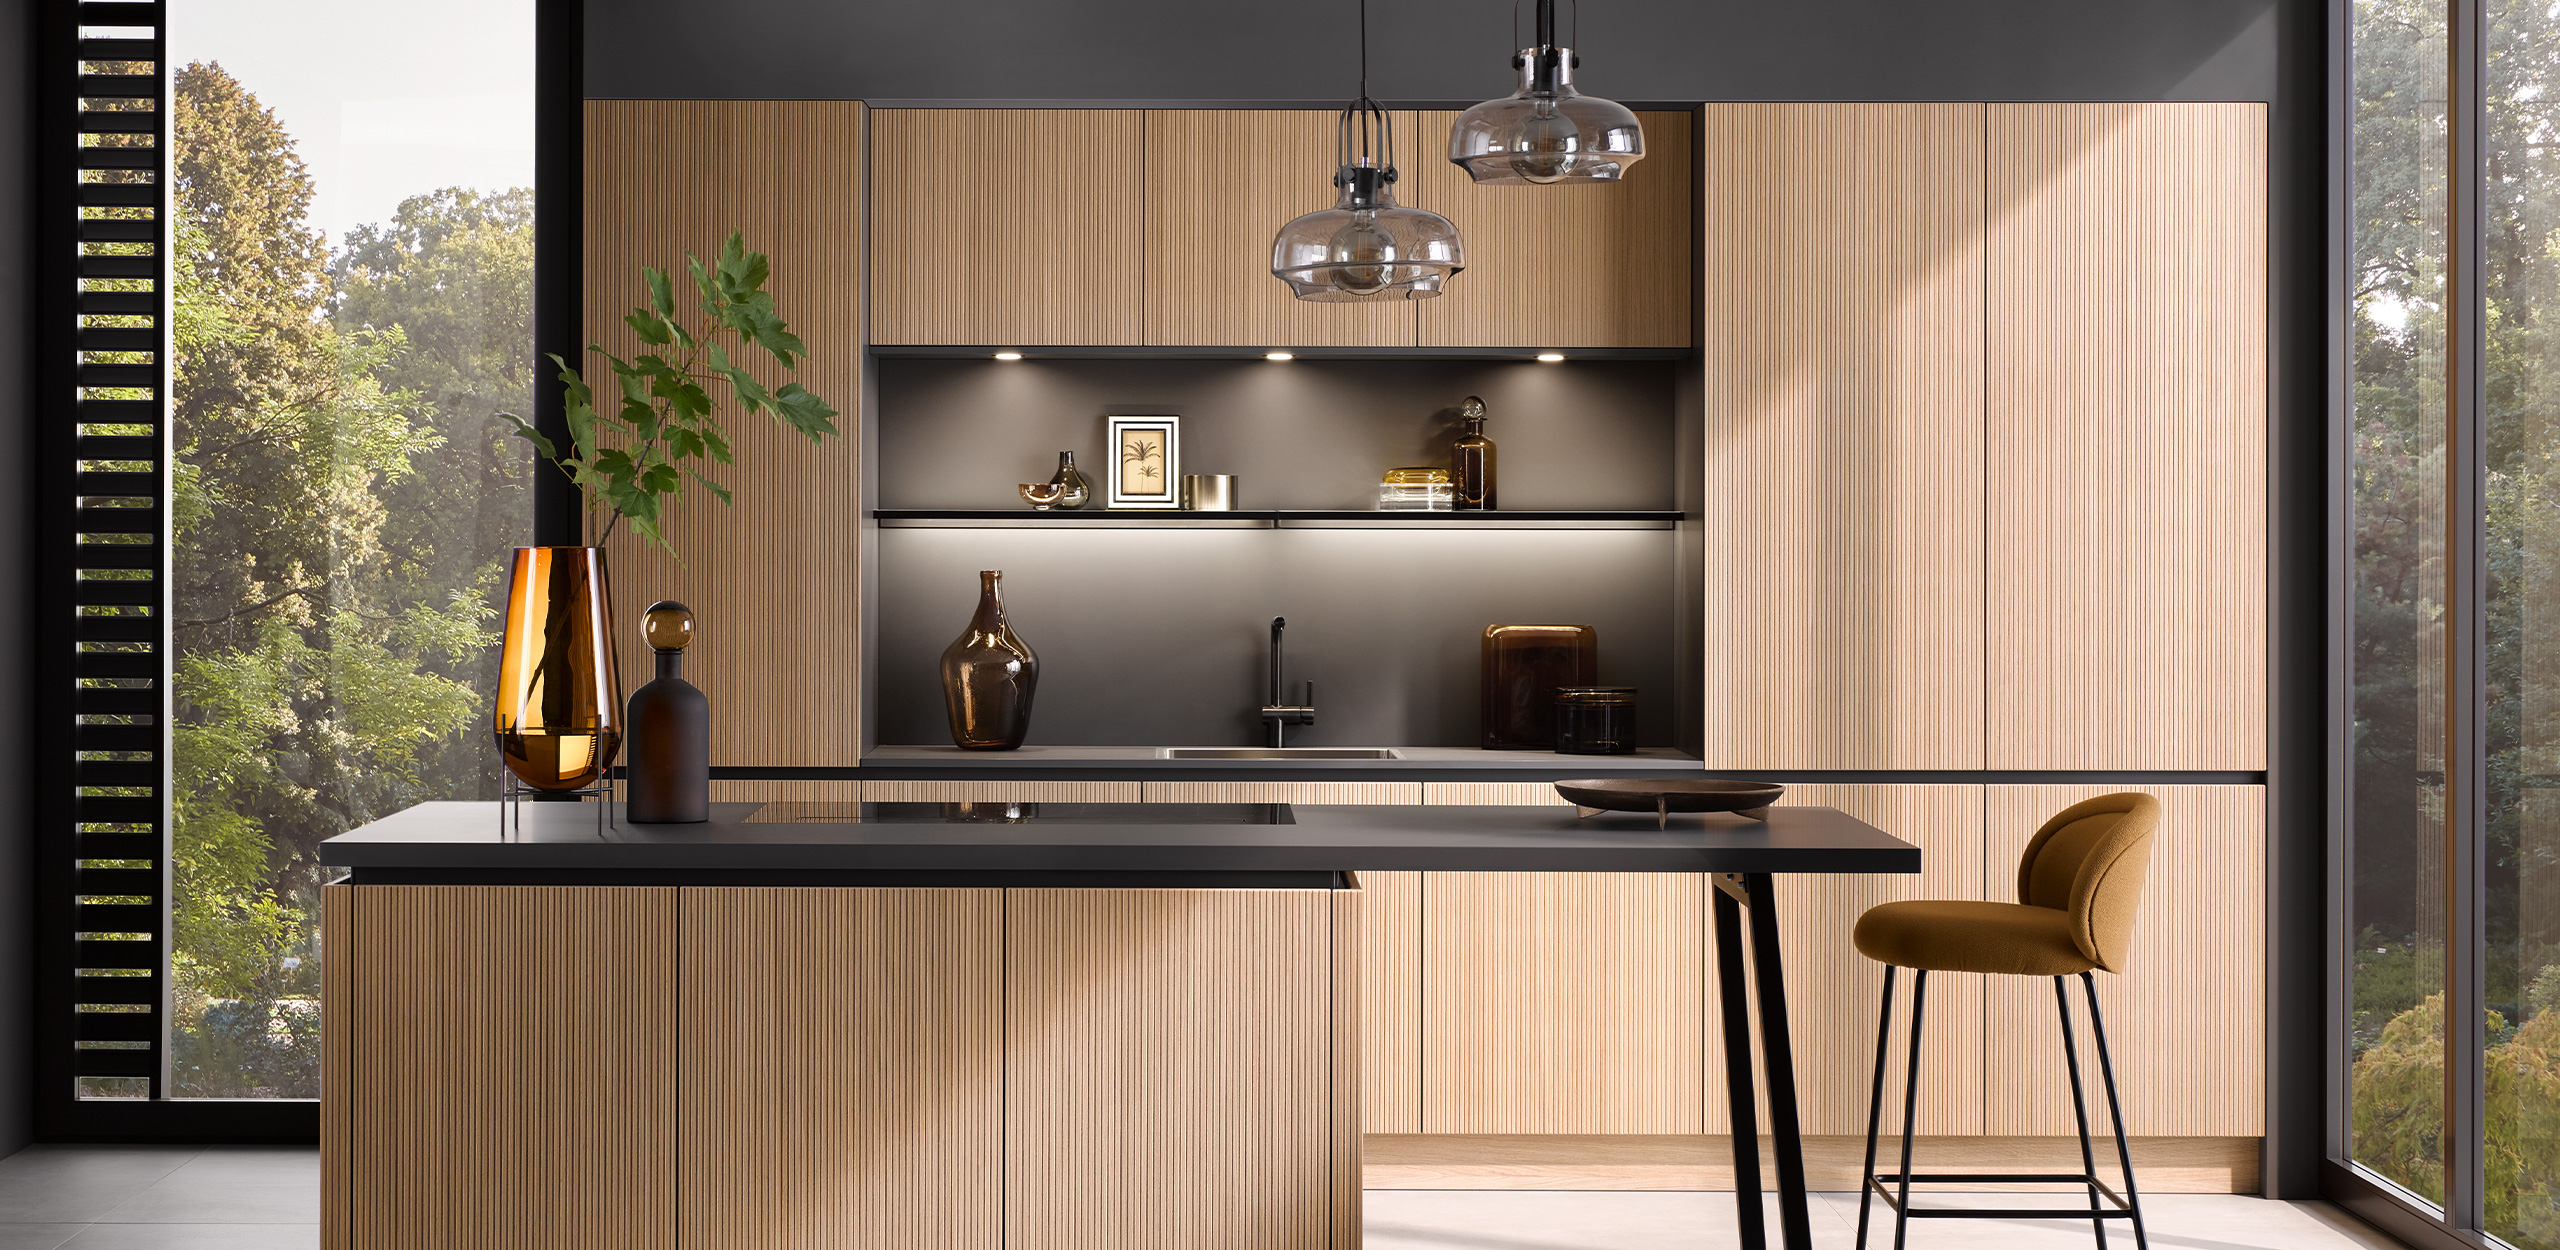 Bild der Küche AV 6023 mit Küchenzeile, Kücheninsel und Hochstühlen